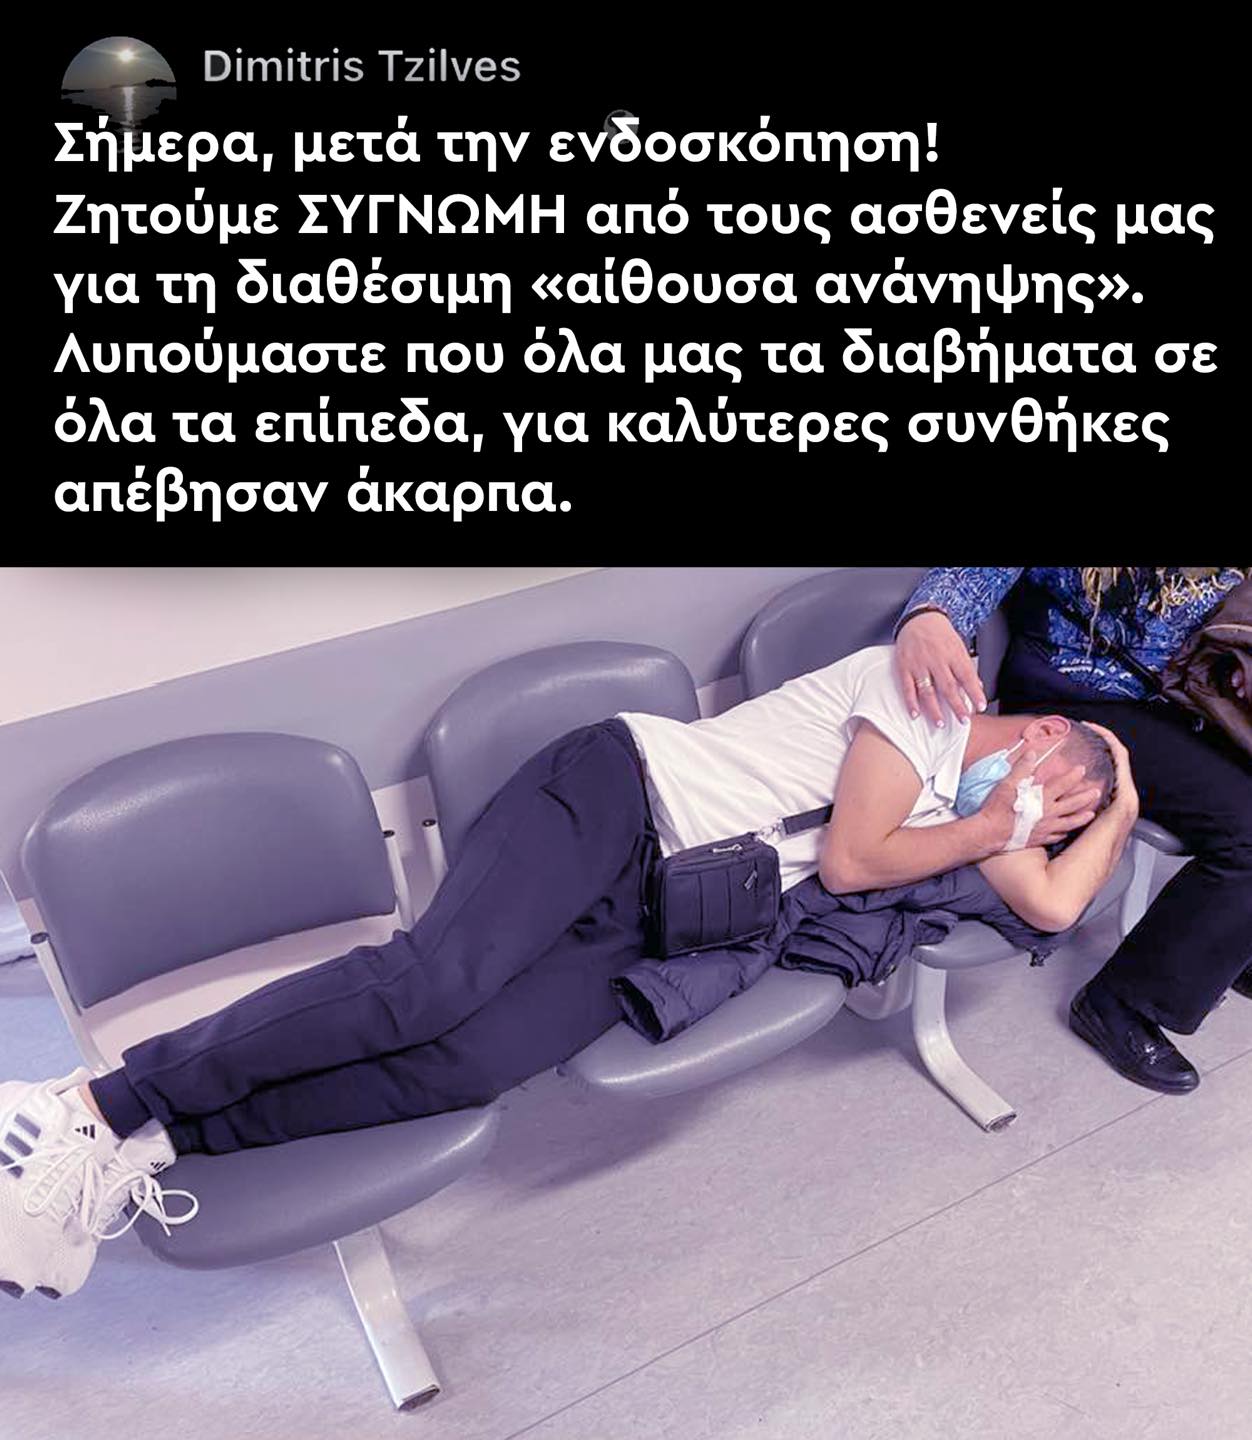 Γεωργιάδης: Επείγουσα ΕΔΕ για τη φωτογραφία με ασθενή σε καρέκλες νοσοκομείου-1